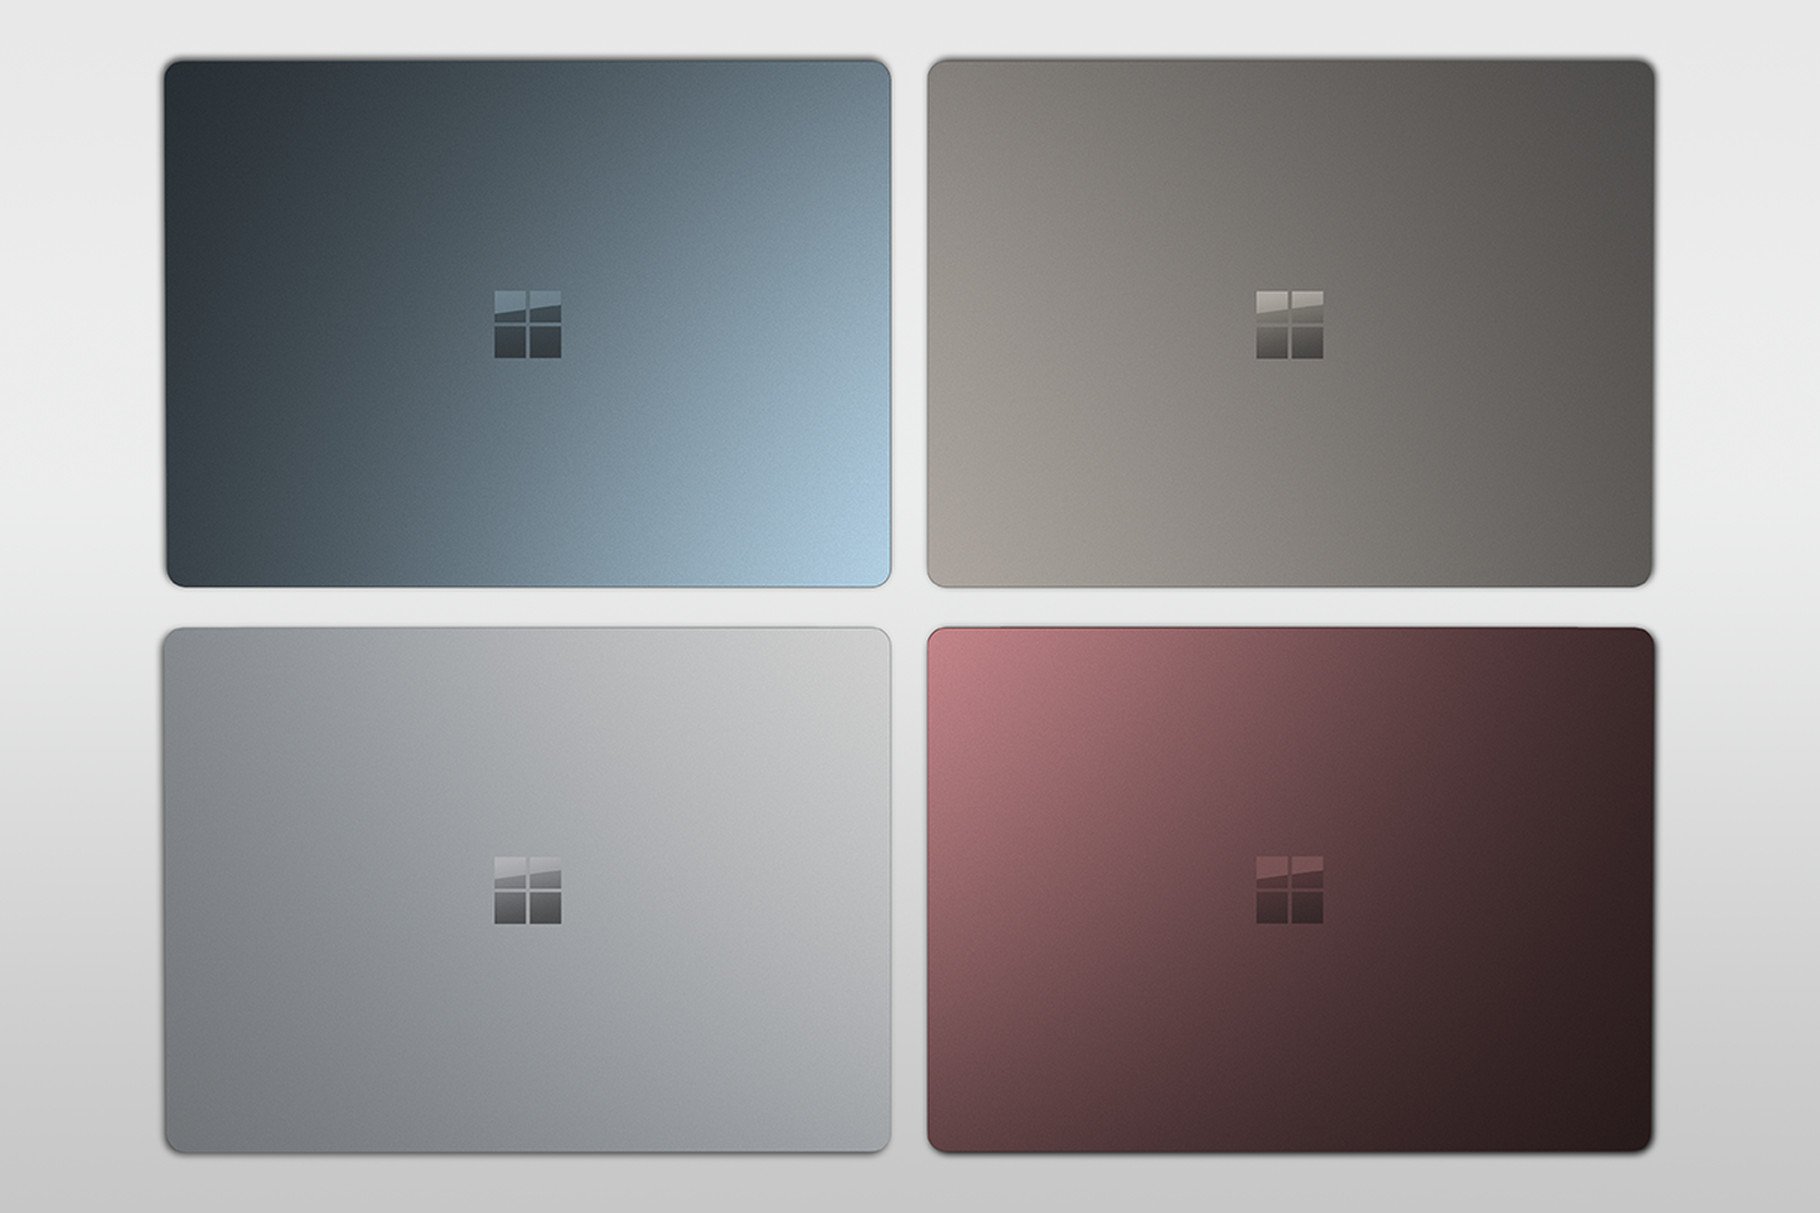 Surface Laptop đã bán rộng rãi hơn với 4 màu đỏ vang, xanh coban, vàng và bạc, gia hạn nâng cấp lên Windows 10 Pro tới 3/2018